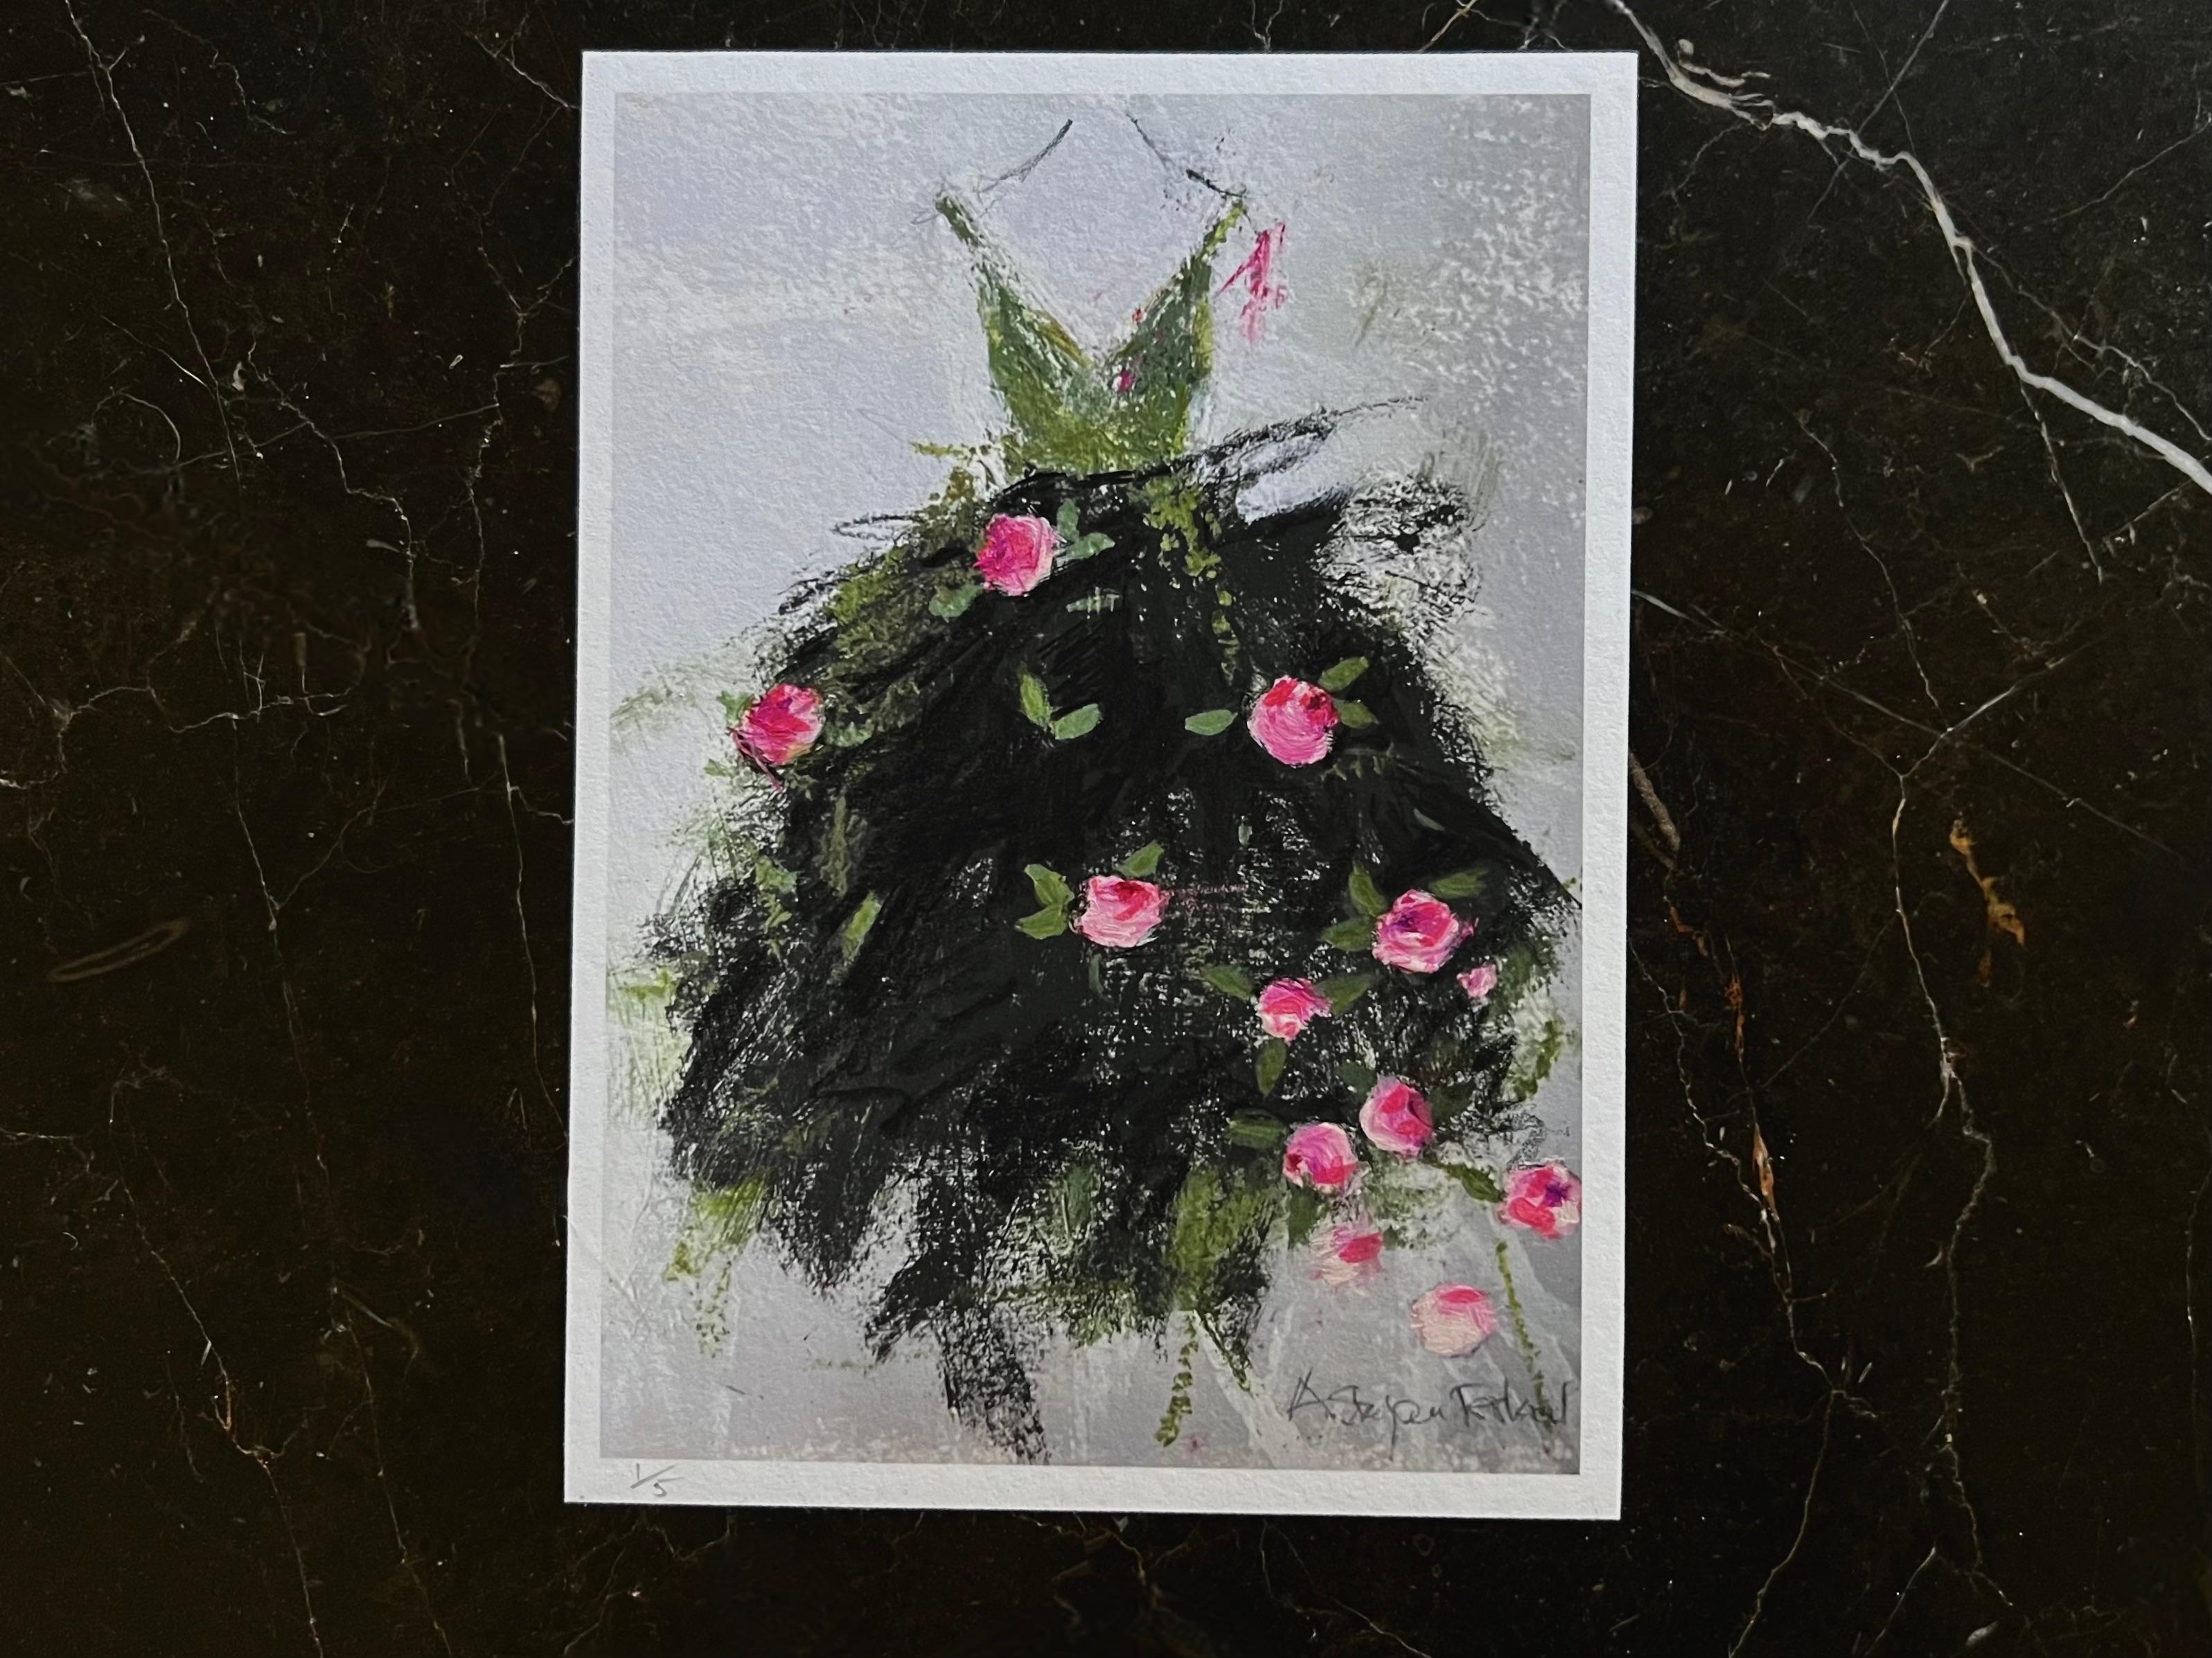 Garden Party - 5 "x7", Giclée-Druck mit handgemalten Elementen, grün, rosa, schwarz